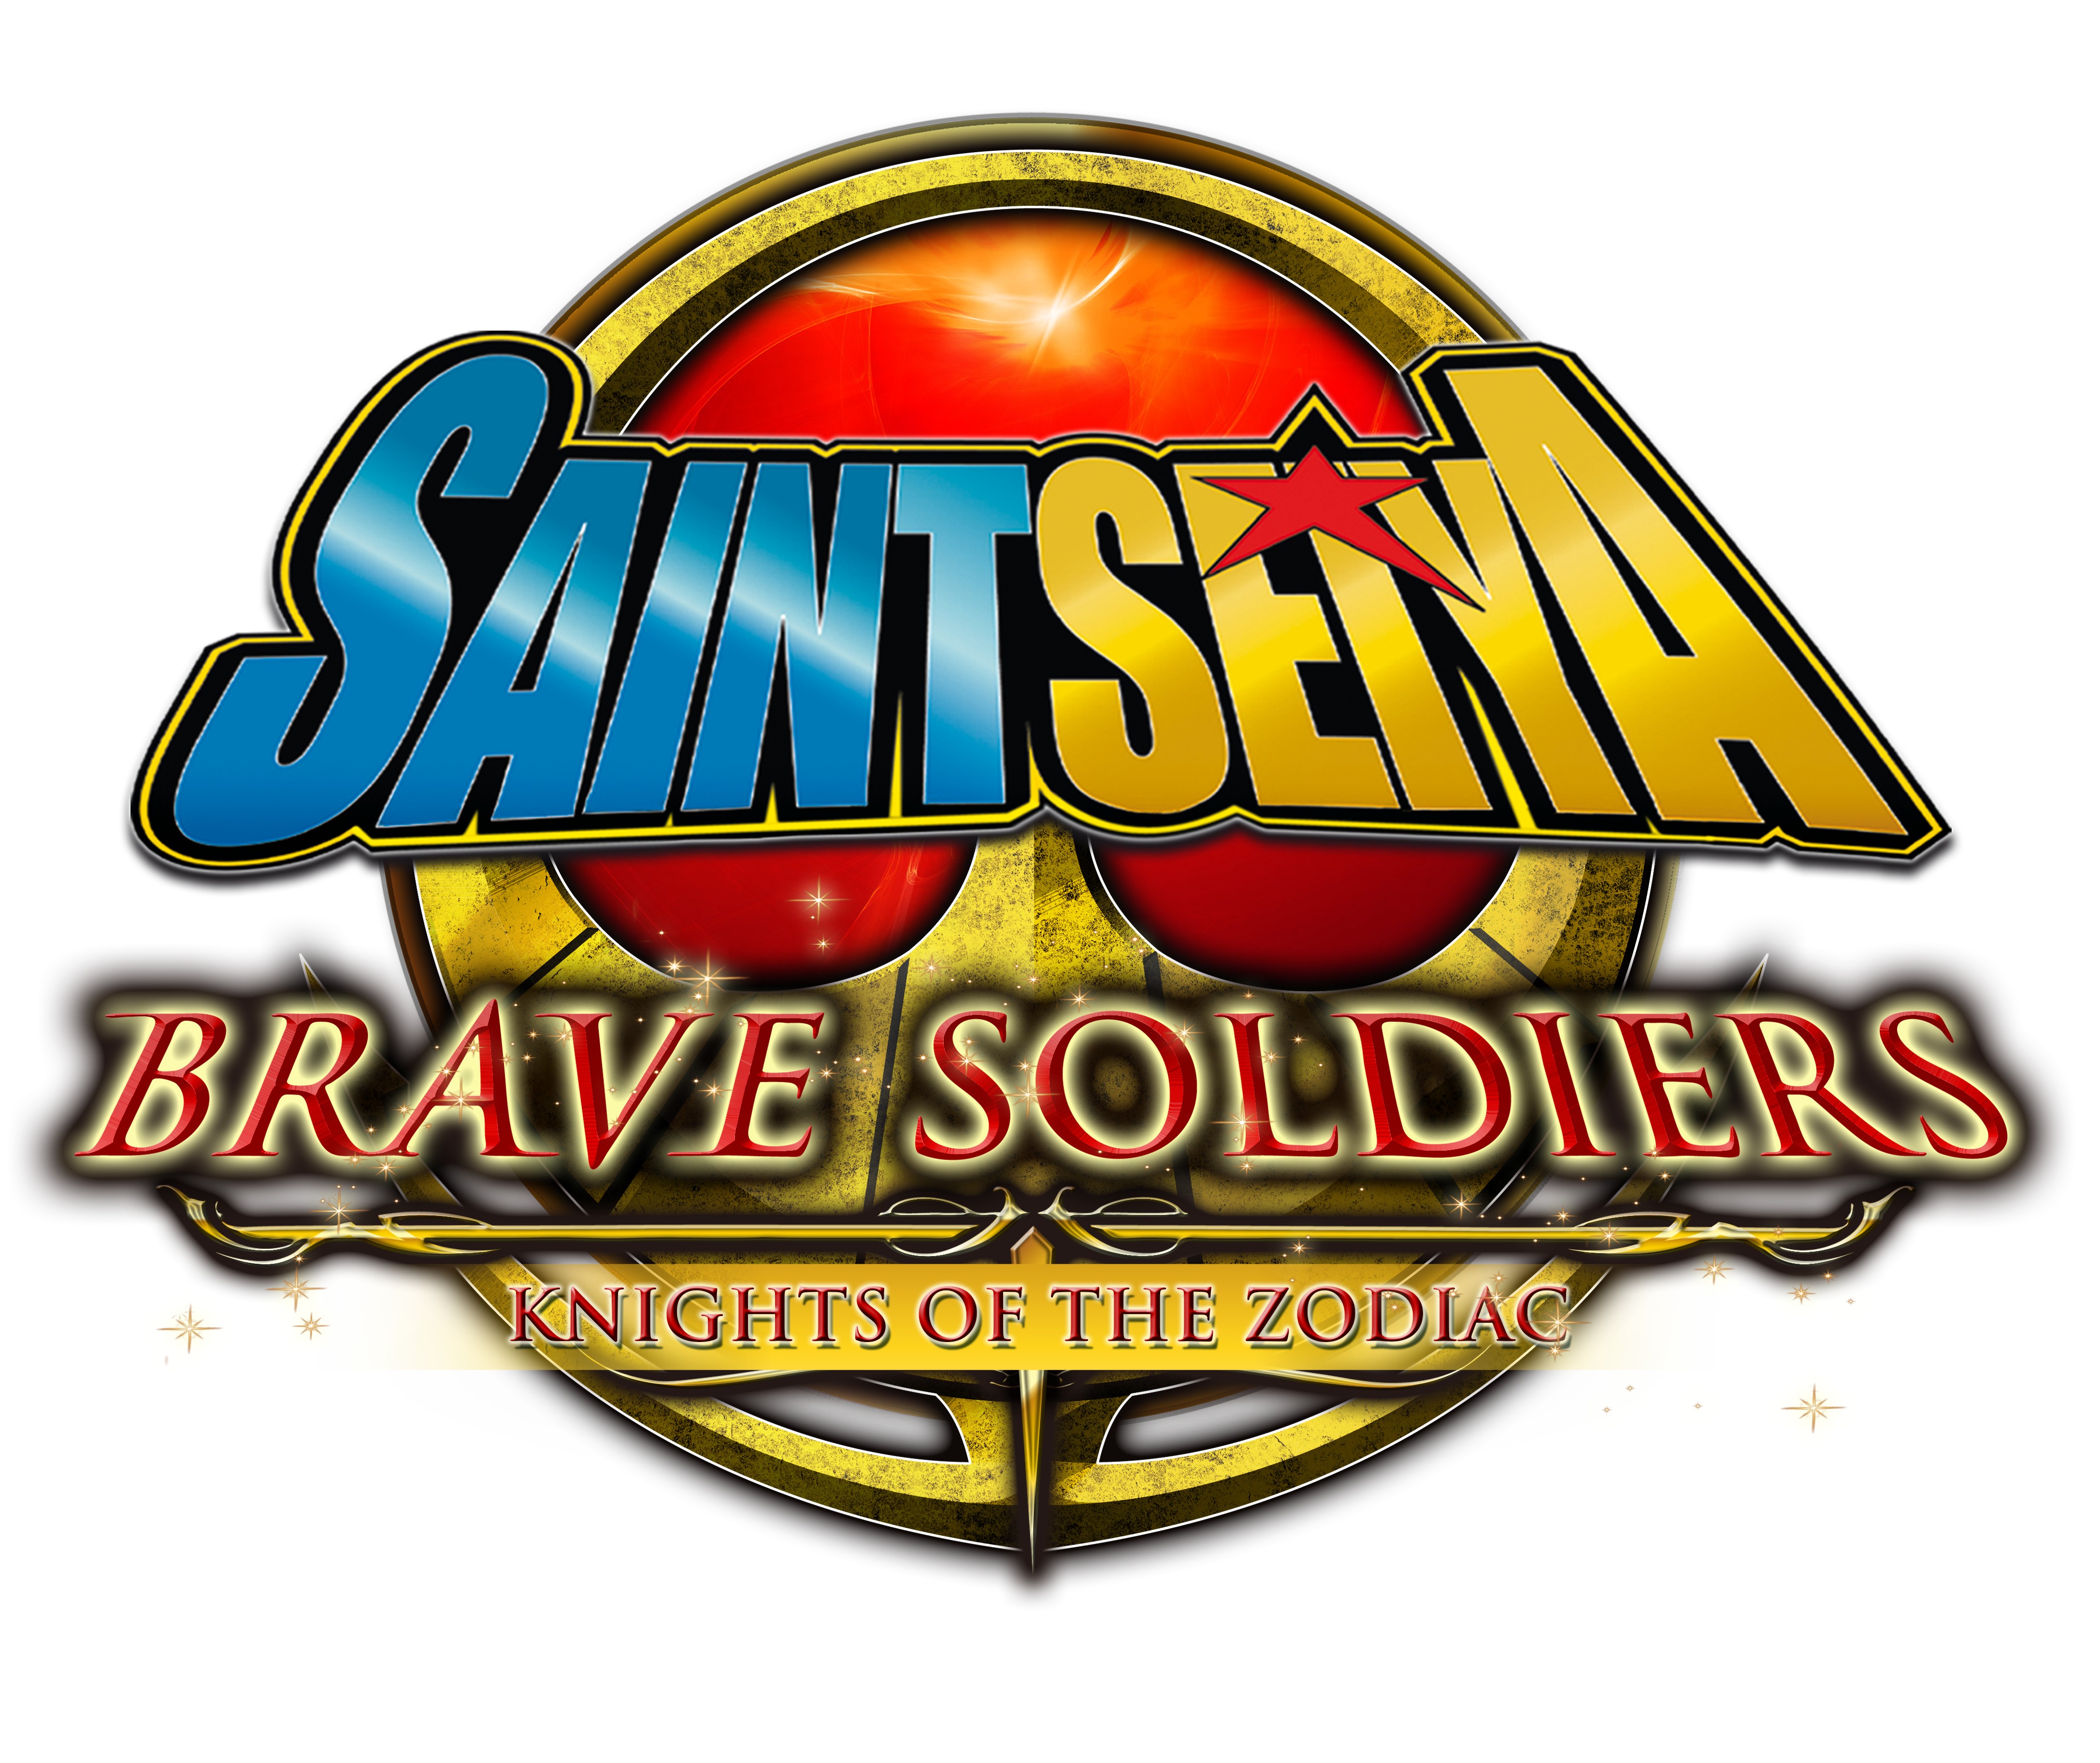 Saint Seiya: Brave Soldiers - GameSpot